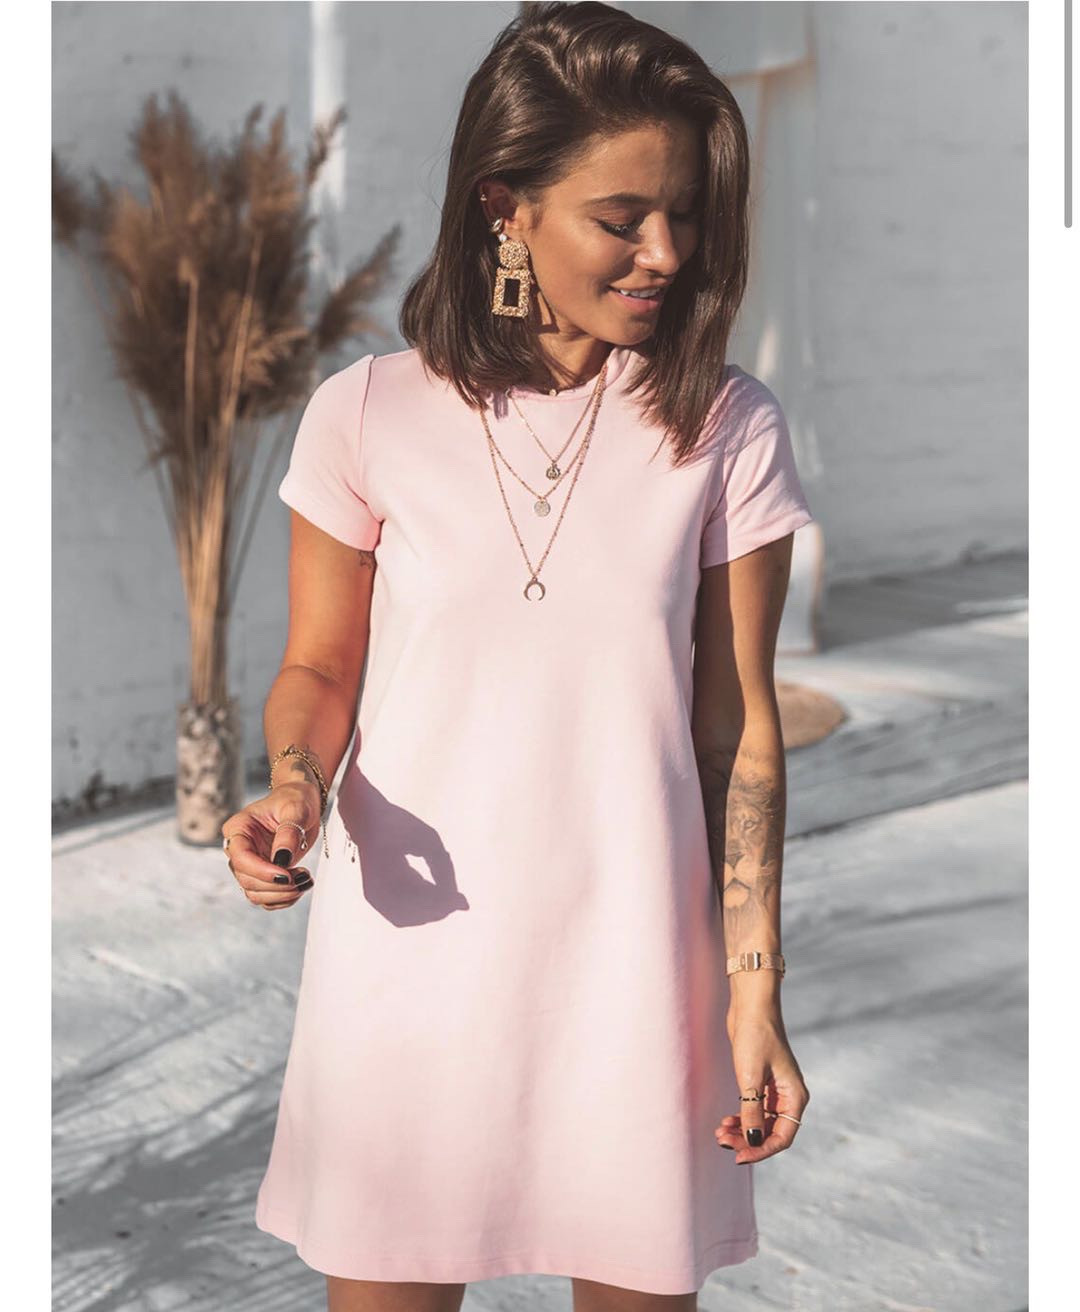 Γυναικείο μπλουζοφόρεμα 5166 ροζ